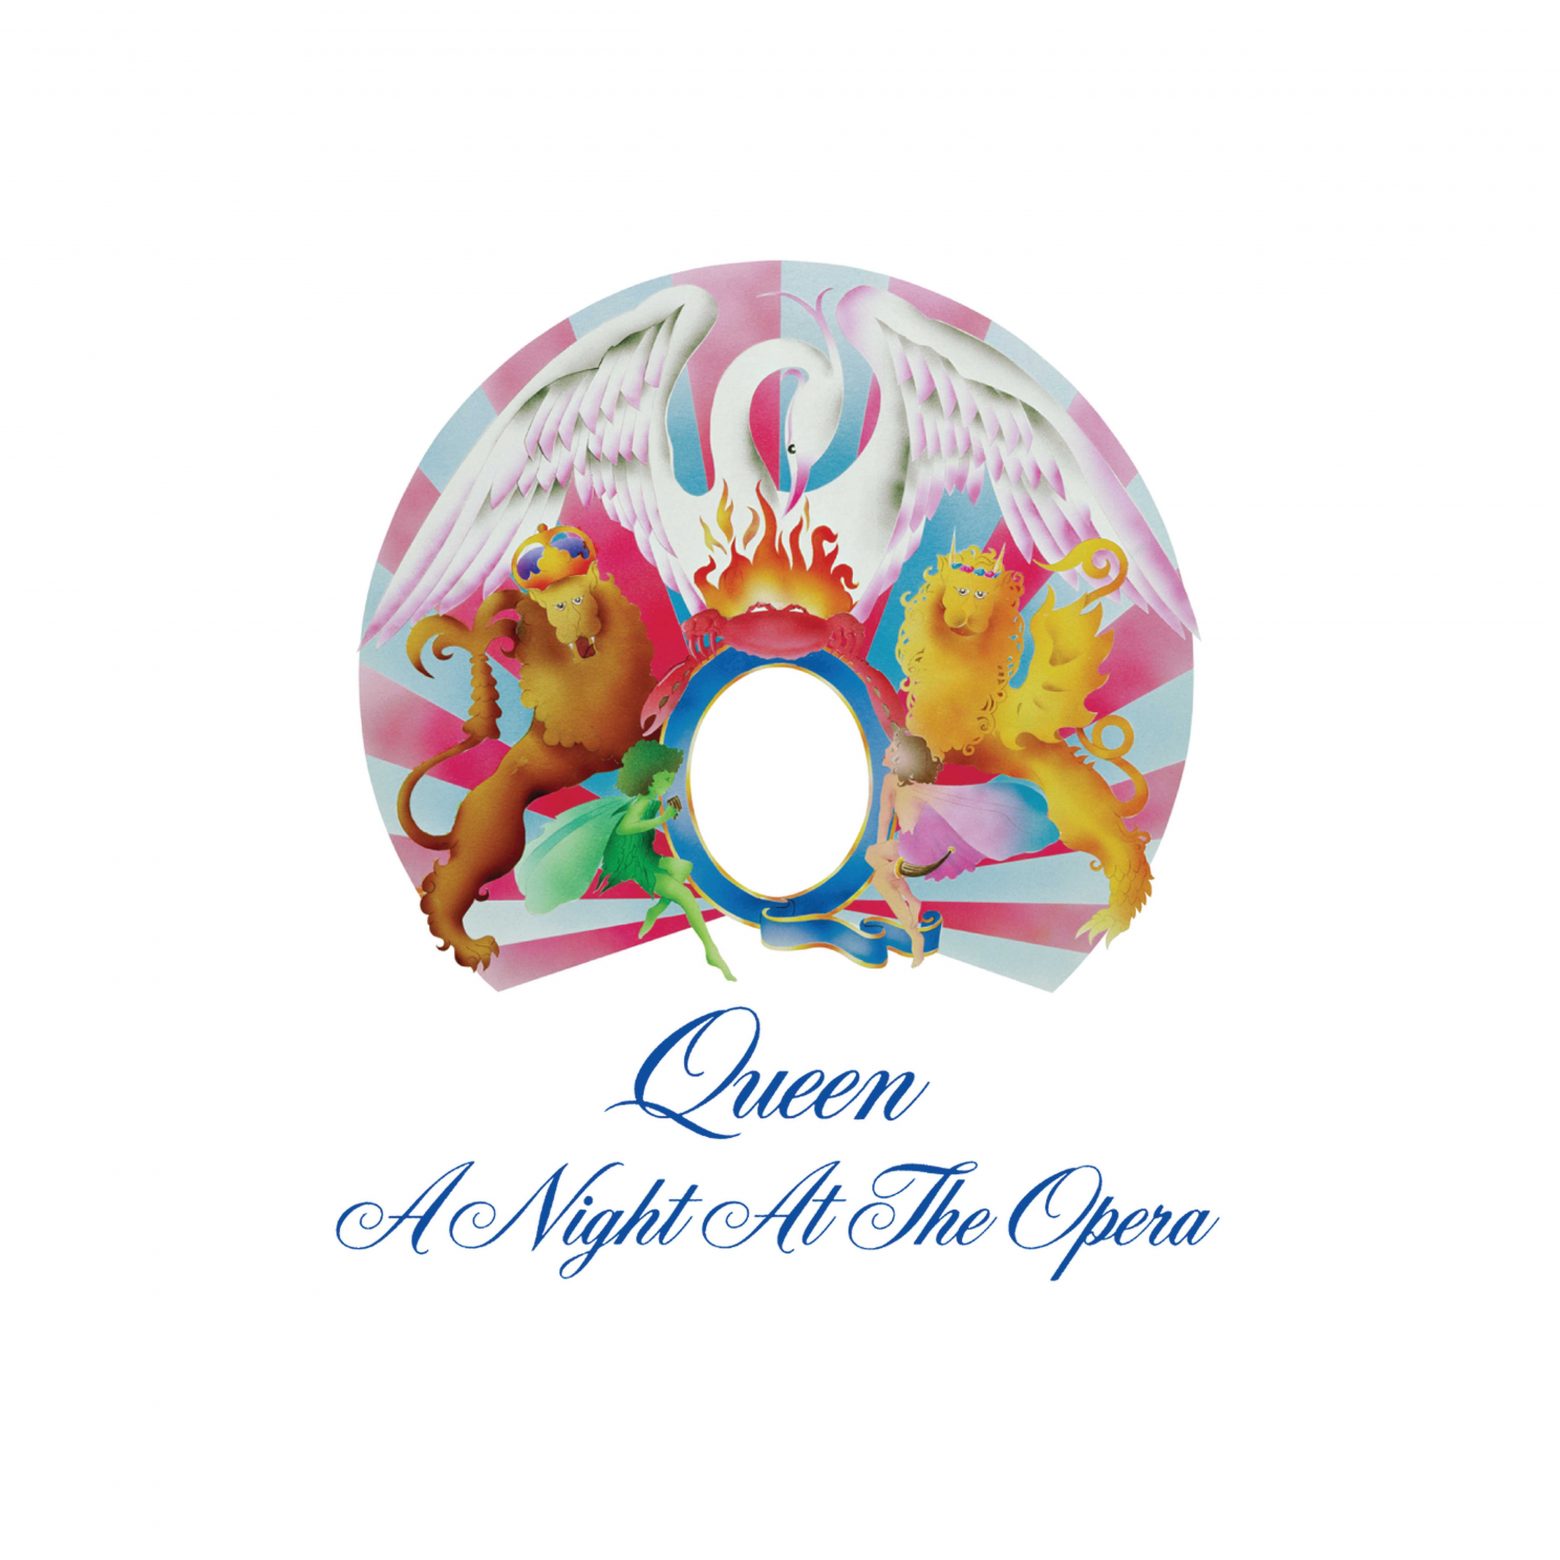 クイーン オペラ座の夜 がプラチナ認定 洋楽アーティストで4つの年代での認定 70年代のオリジナル アルバムが認定されたのは史上初 Musicman